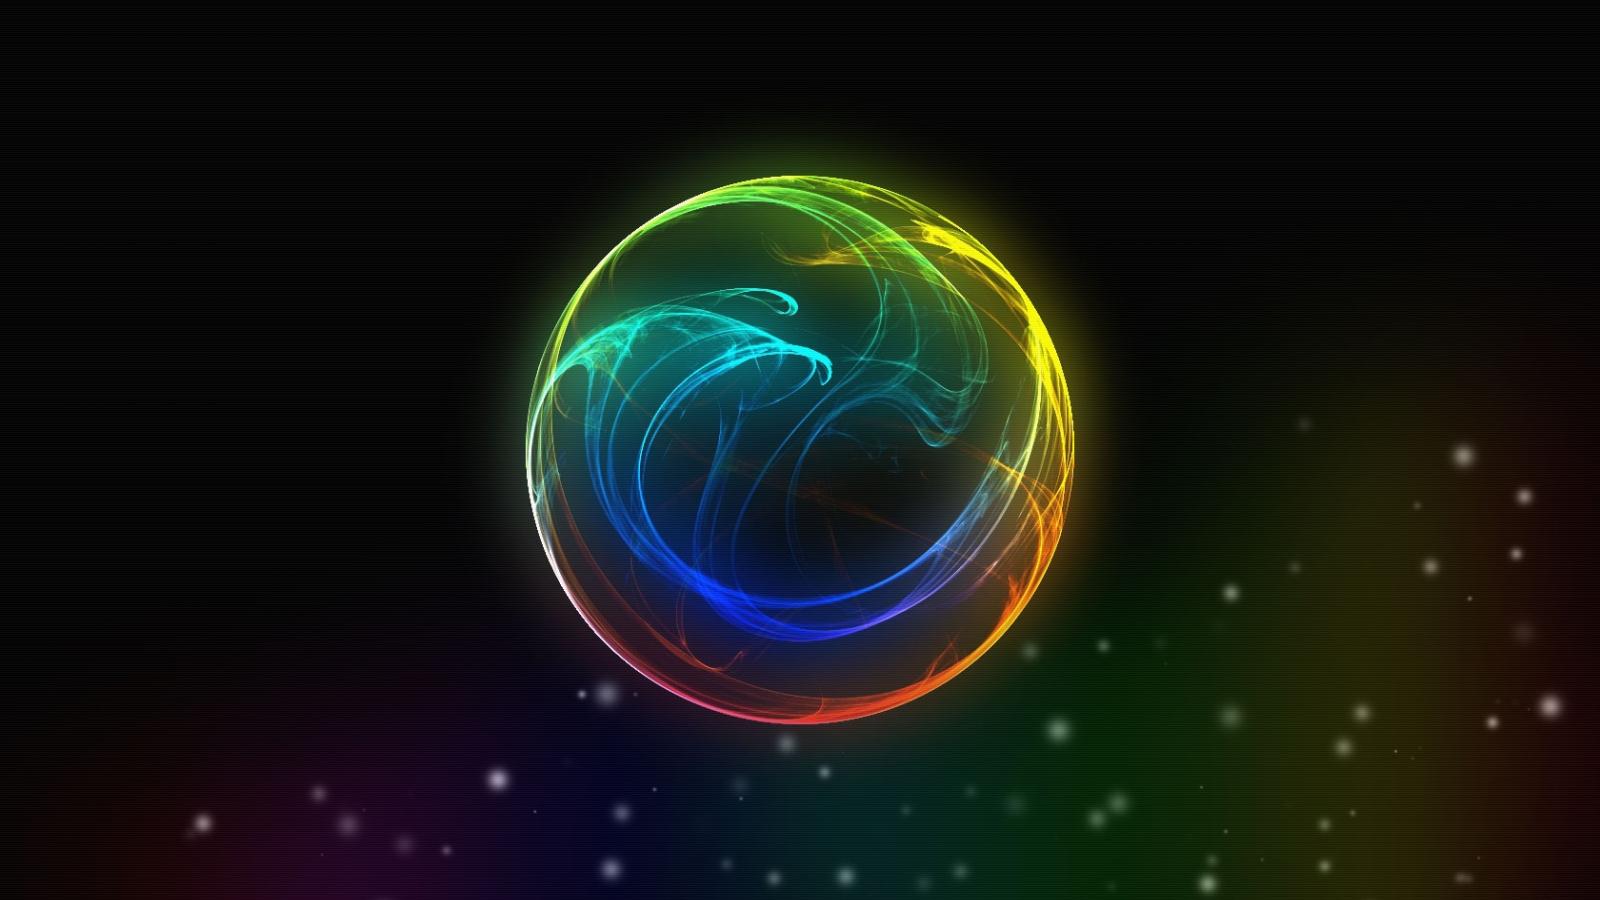 Free download Neon Light Ball Wallpaper Neon Light Ball